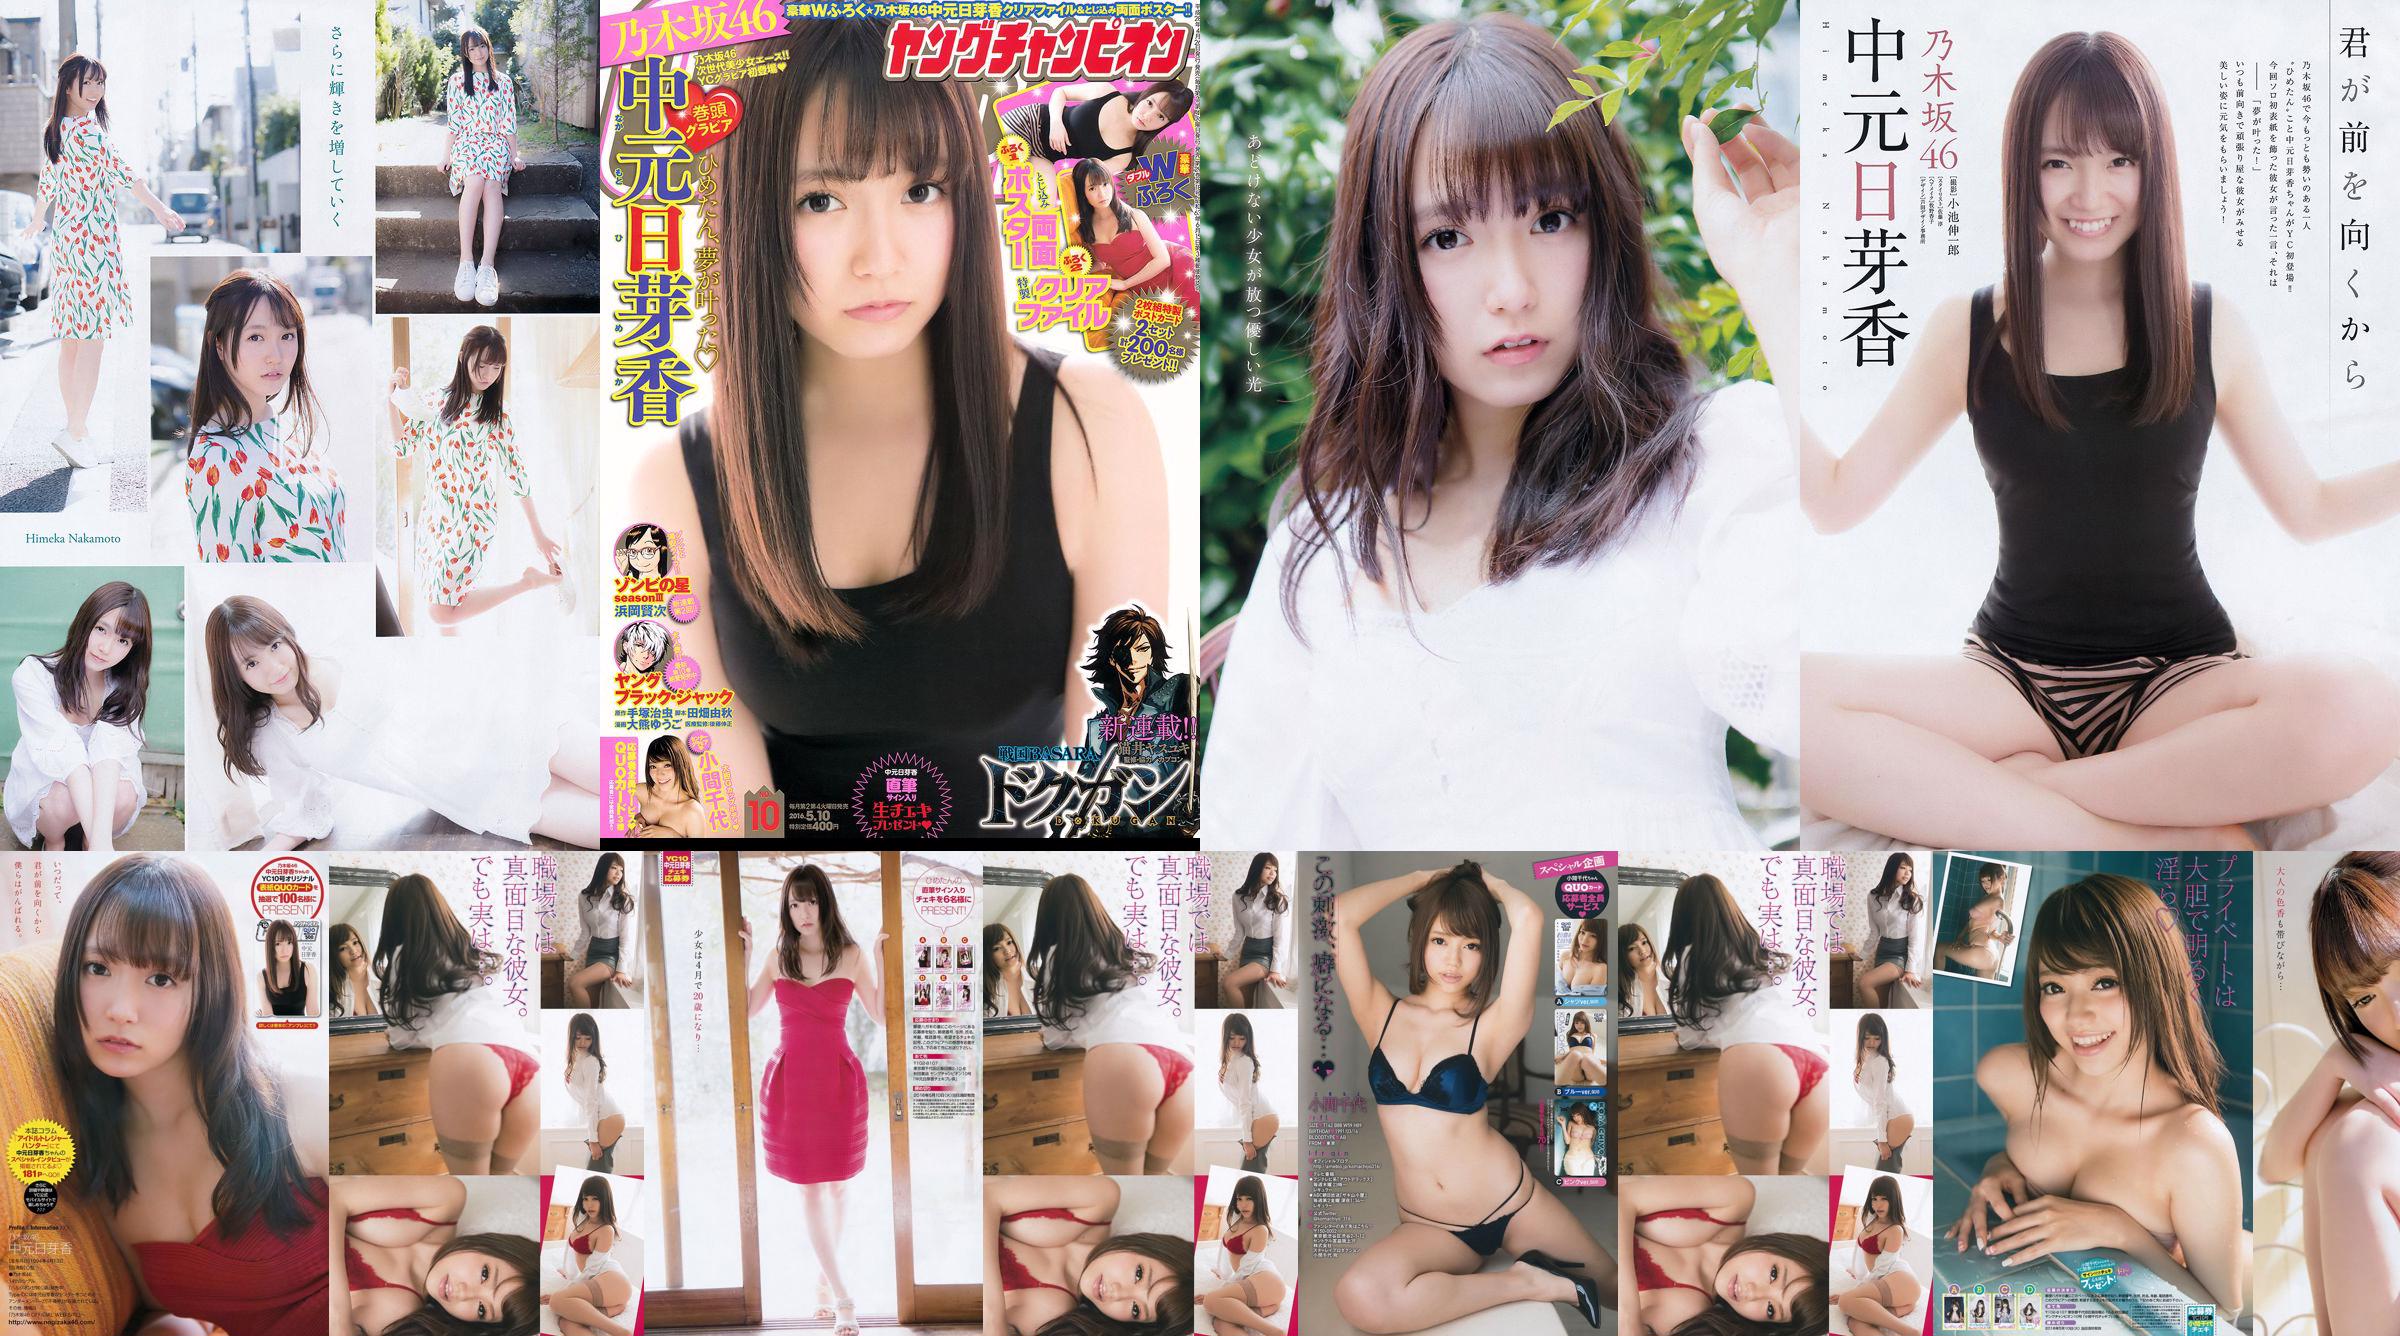 [Young Champion] Nakamoto Nichiko Koma Chiyo 2016 No.10 Photo Magazine No.c8c9d2 Page 2